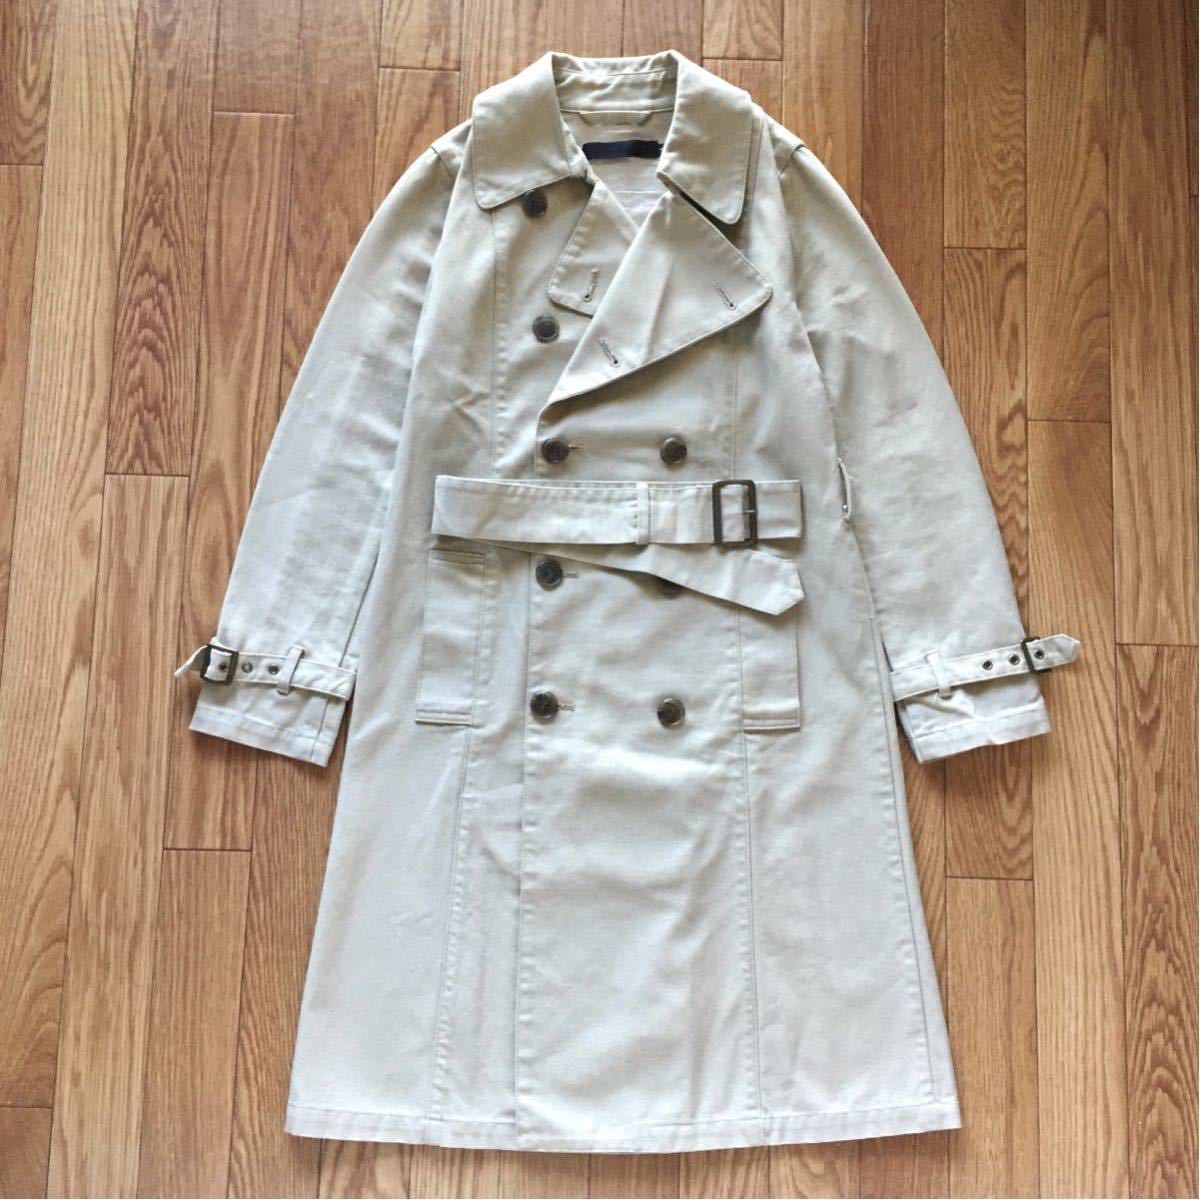 AMERICAN RAG CIE Trench coat アメリカンラグシー トレンチコート サイズ1 Sサイス相当 日本製 JAPAN MADE クラシカル ミリタリーウェア